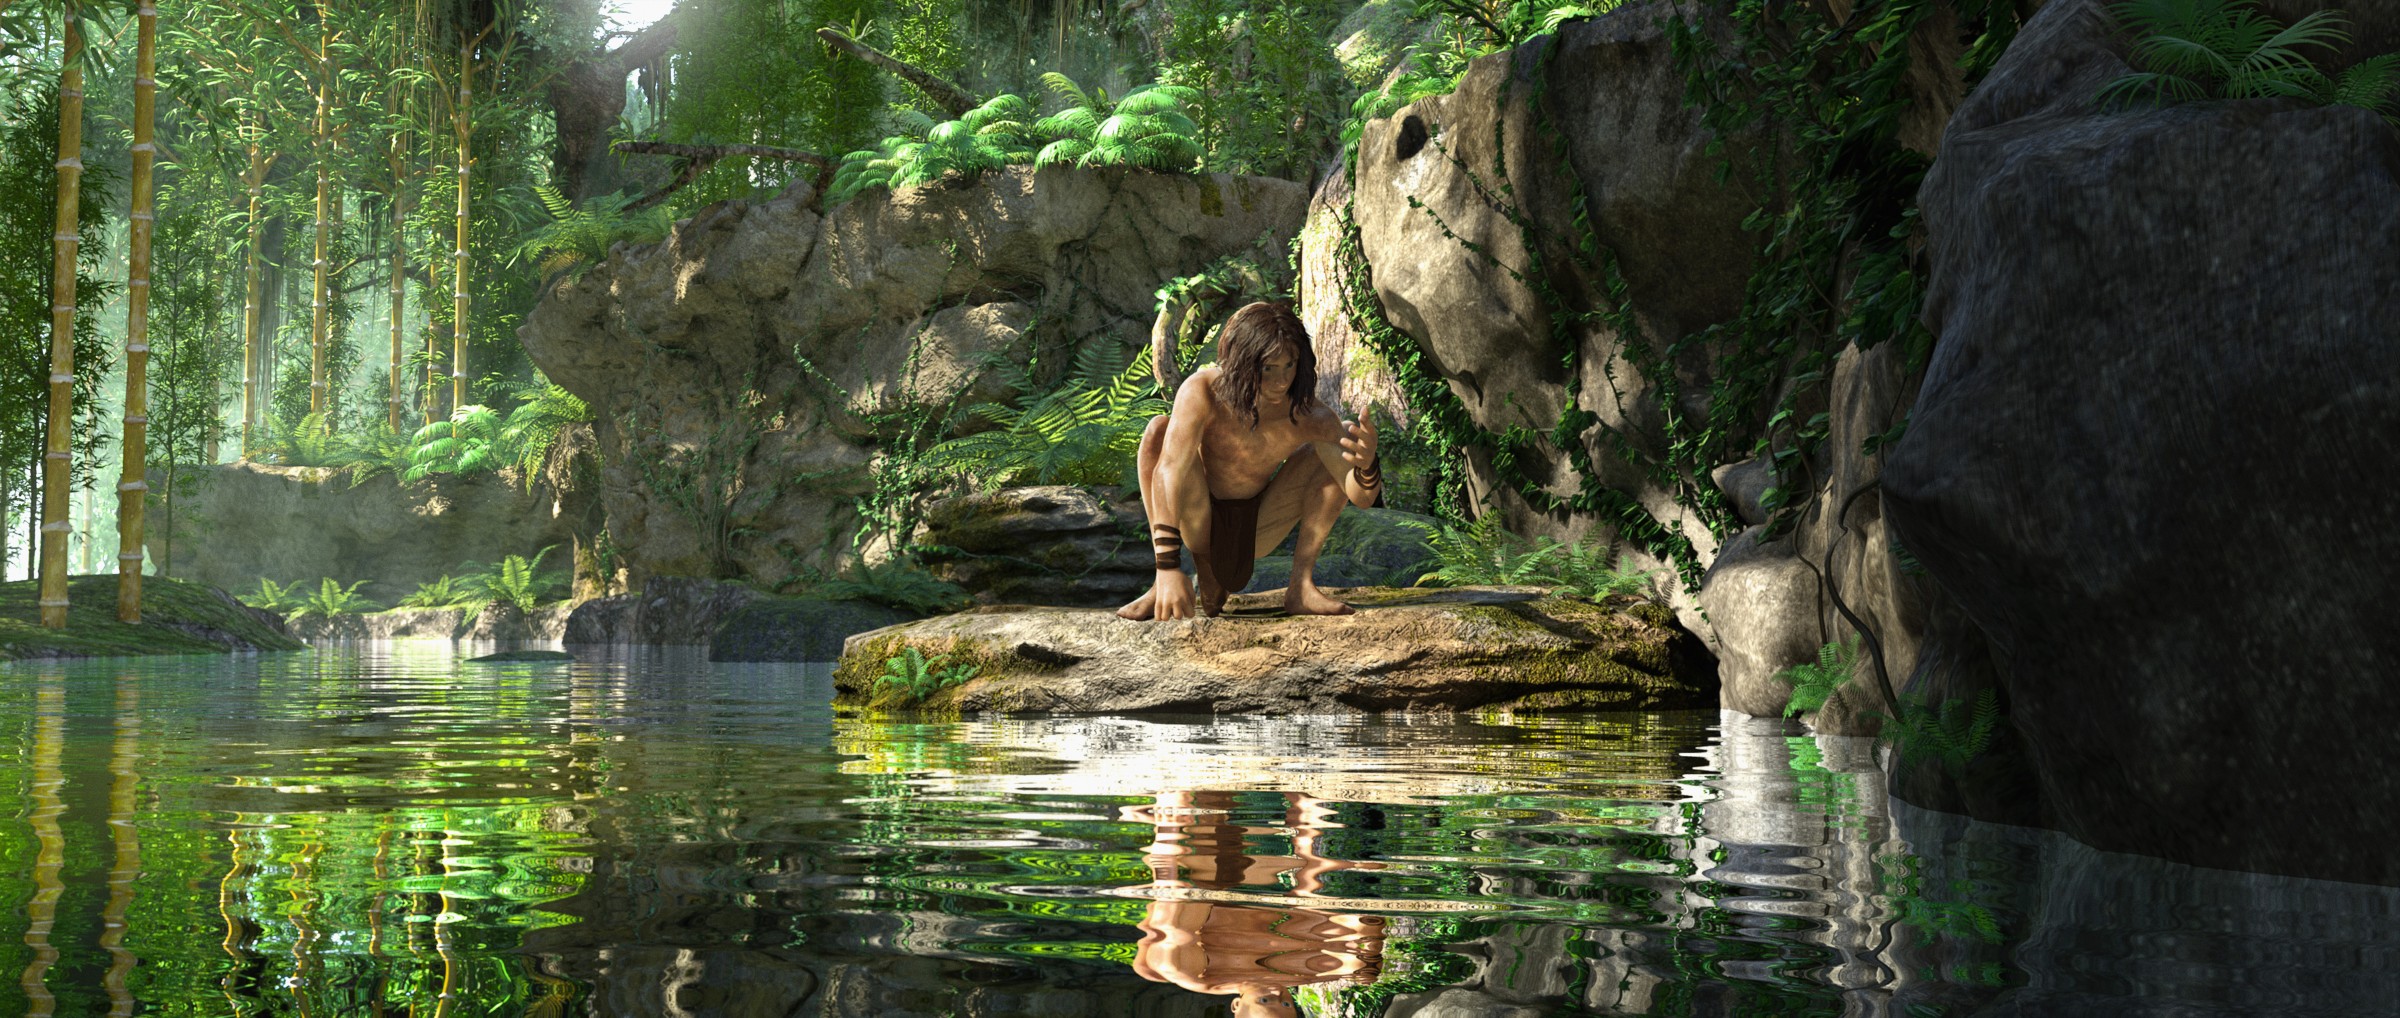 Tarzan 3D-Animation Official Poster Banner PROMO PHOTOS-10DEZEMBRO2013-02